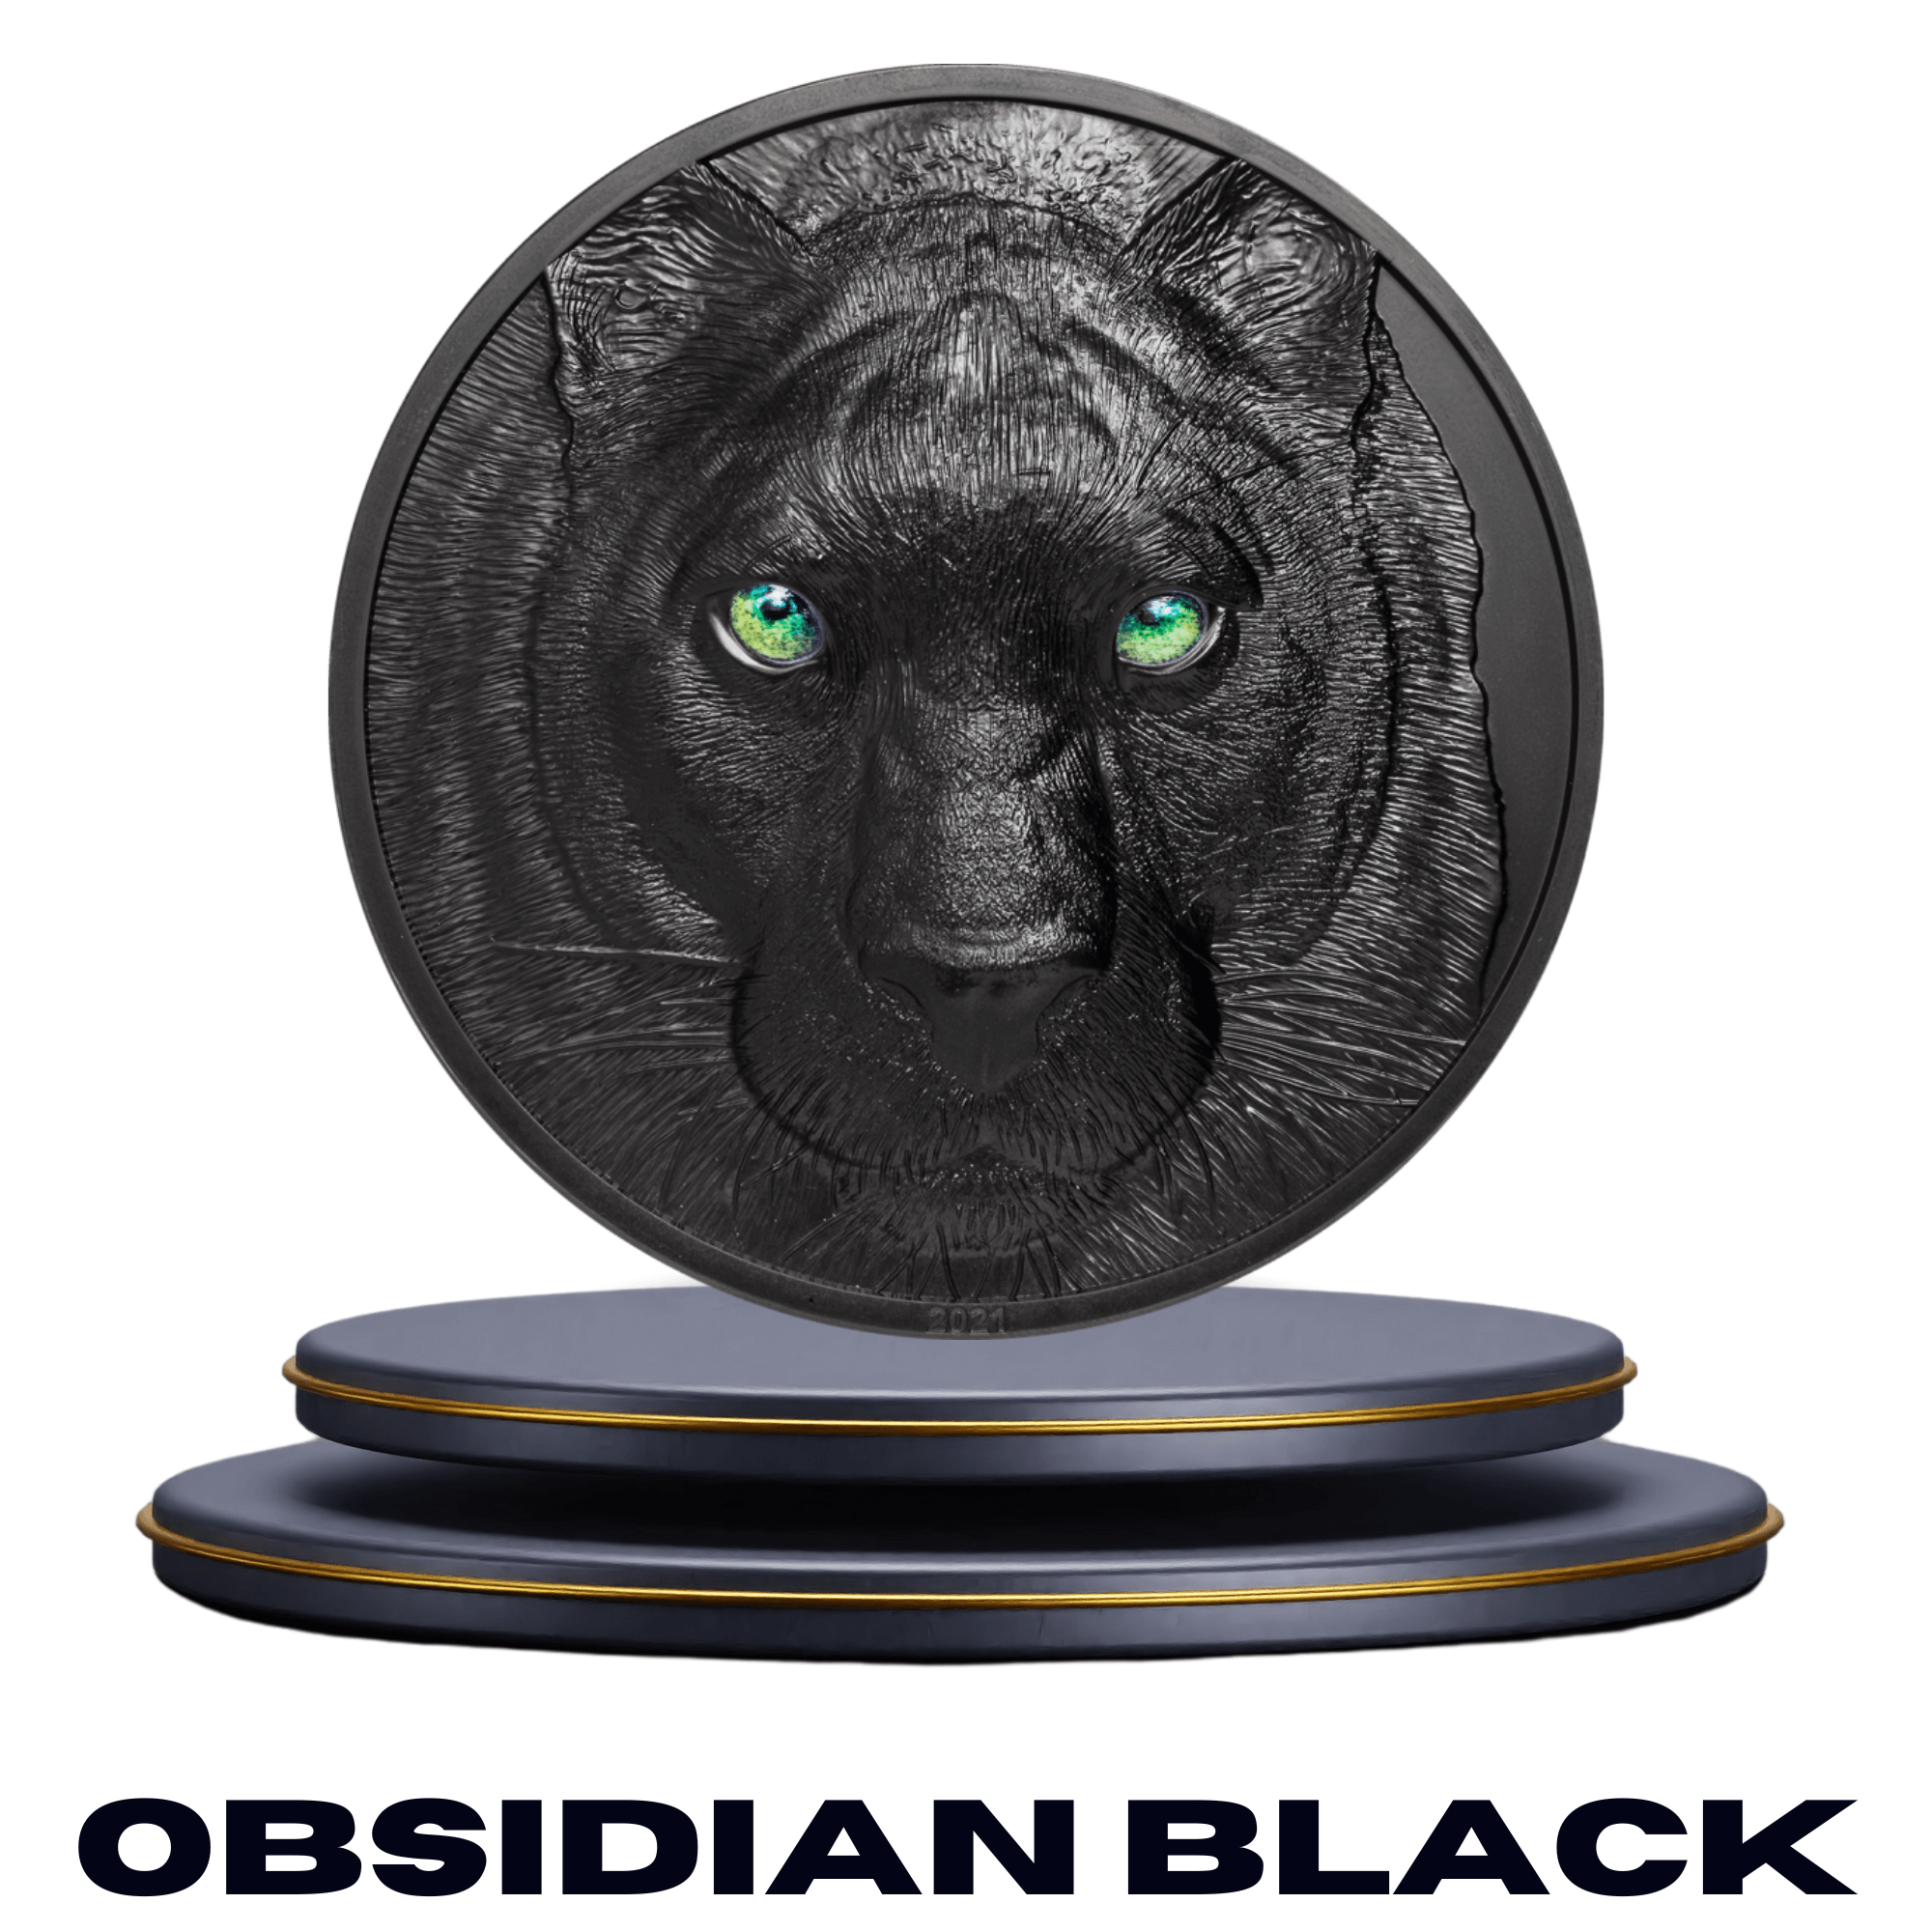 OBSIDIAN BLACK - PARTHAVA COIN